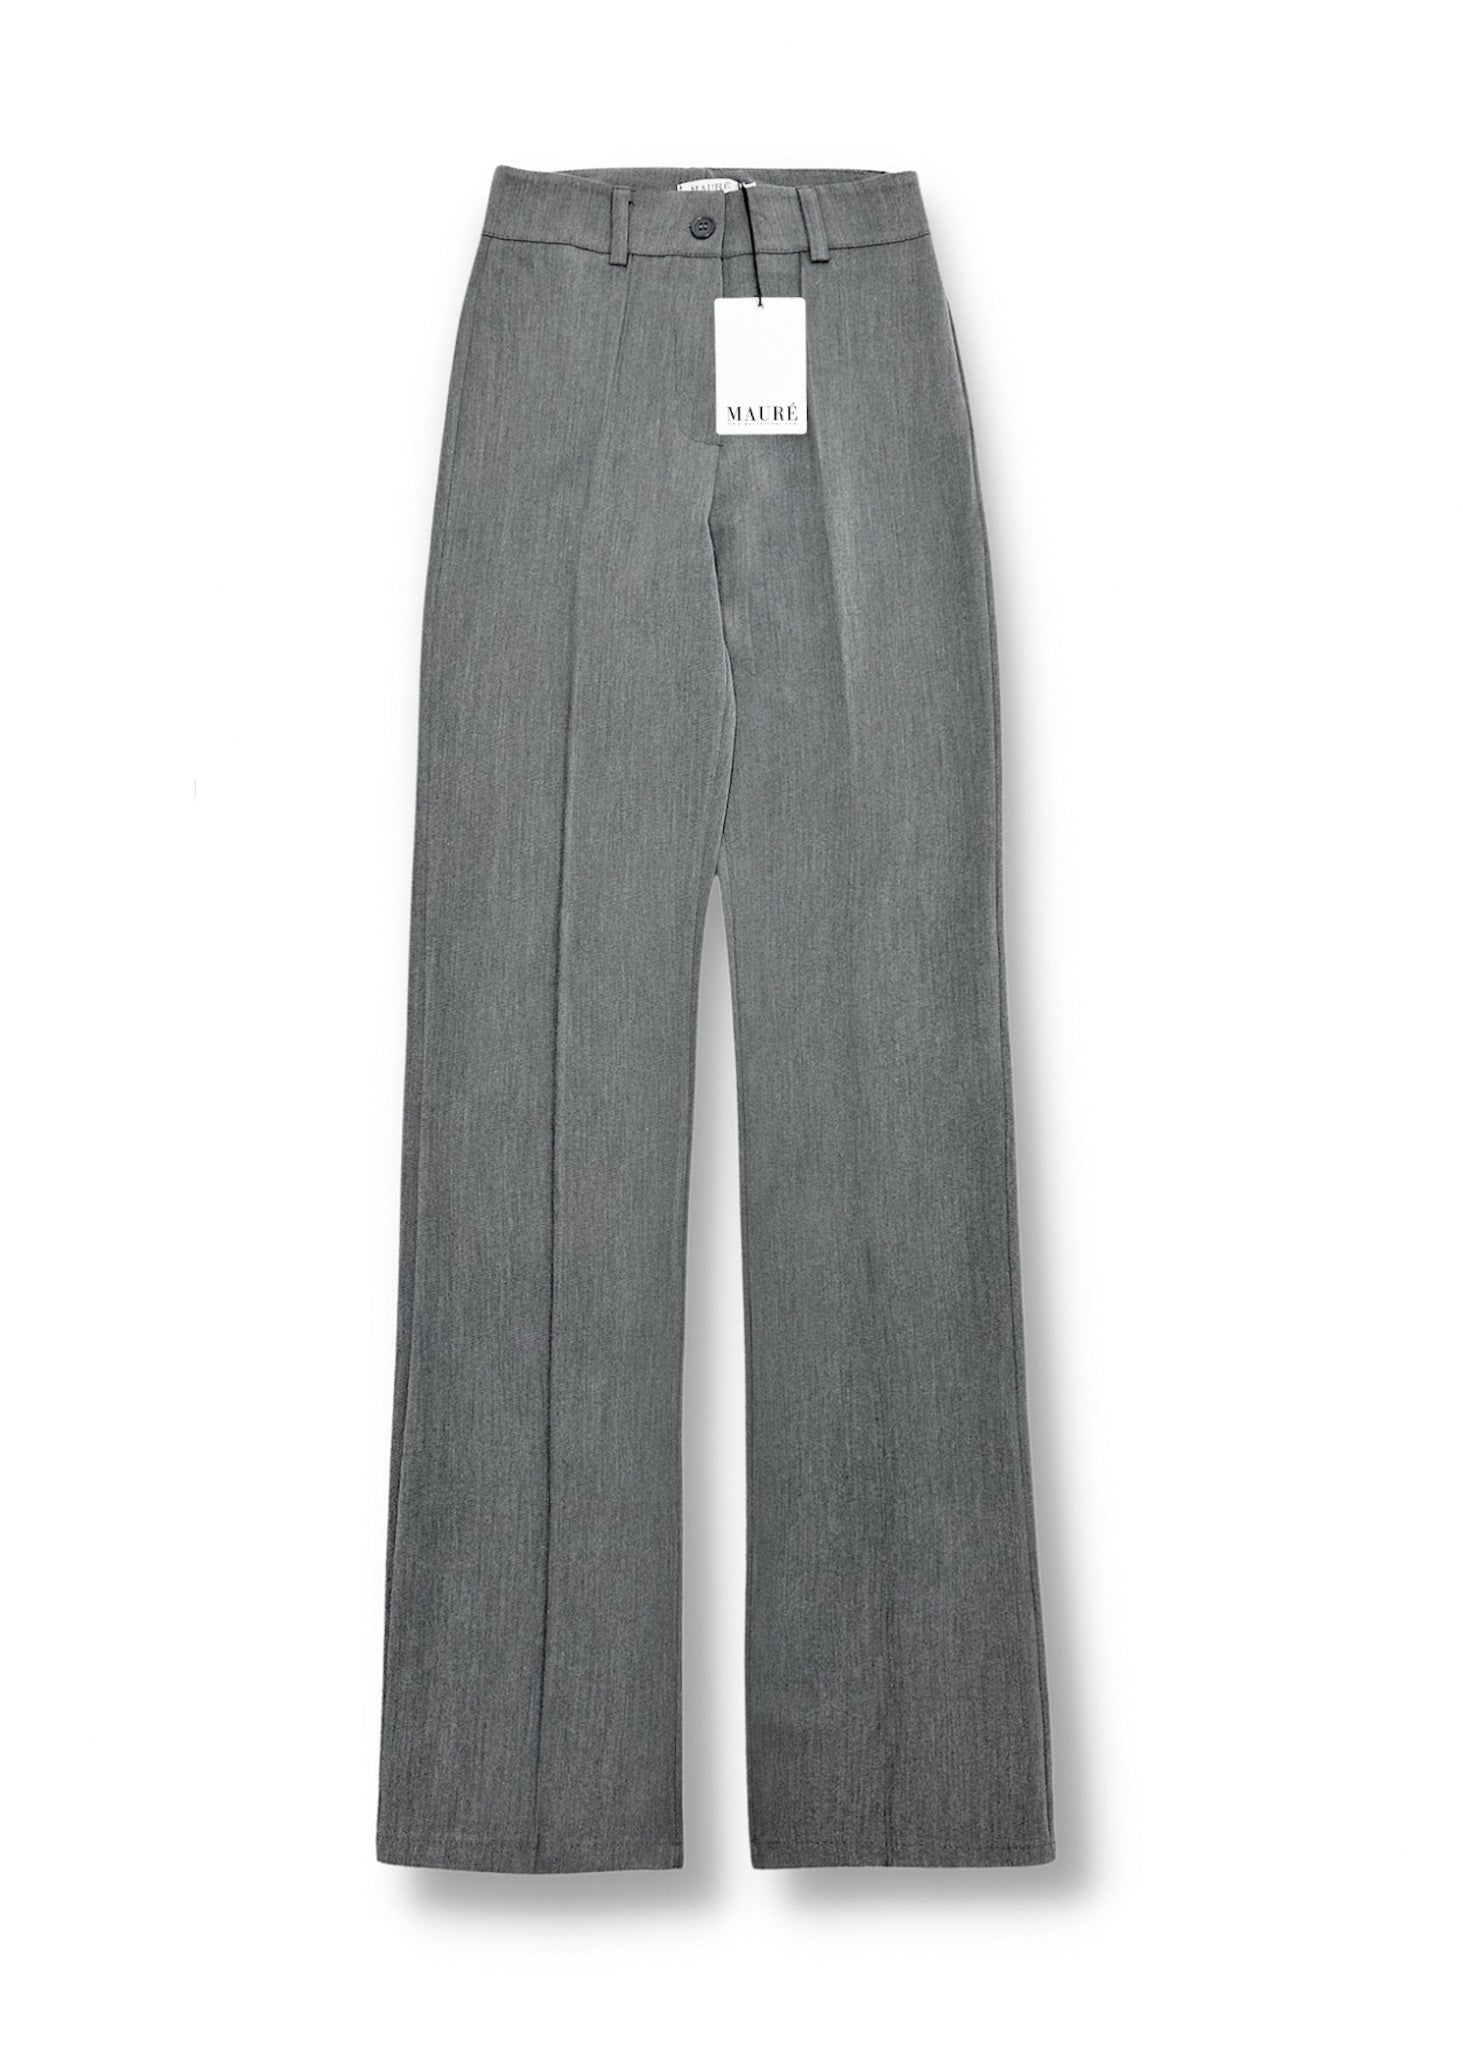 Pantalon droit avec pliage gris clair délavé (TALL)